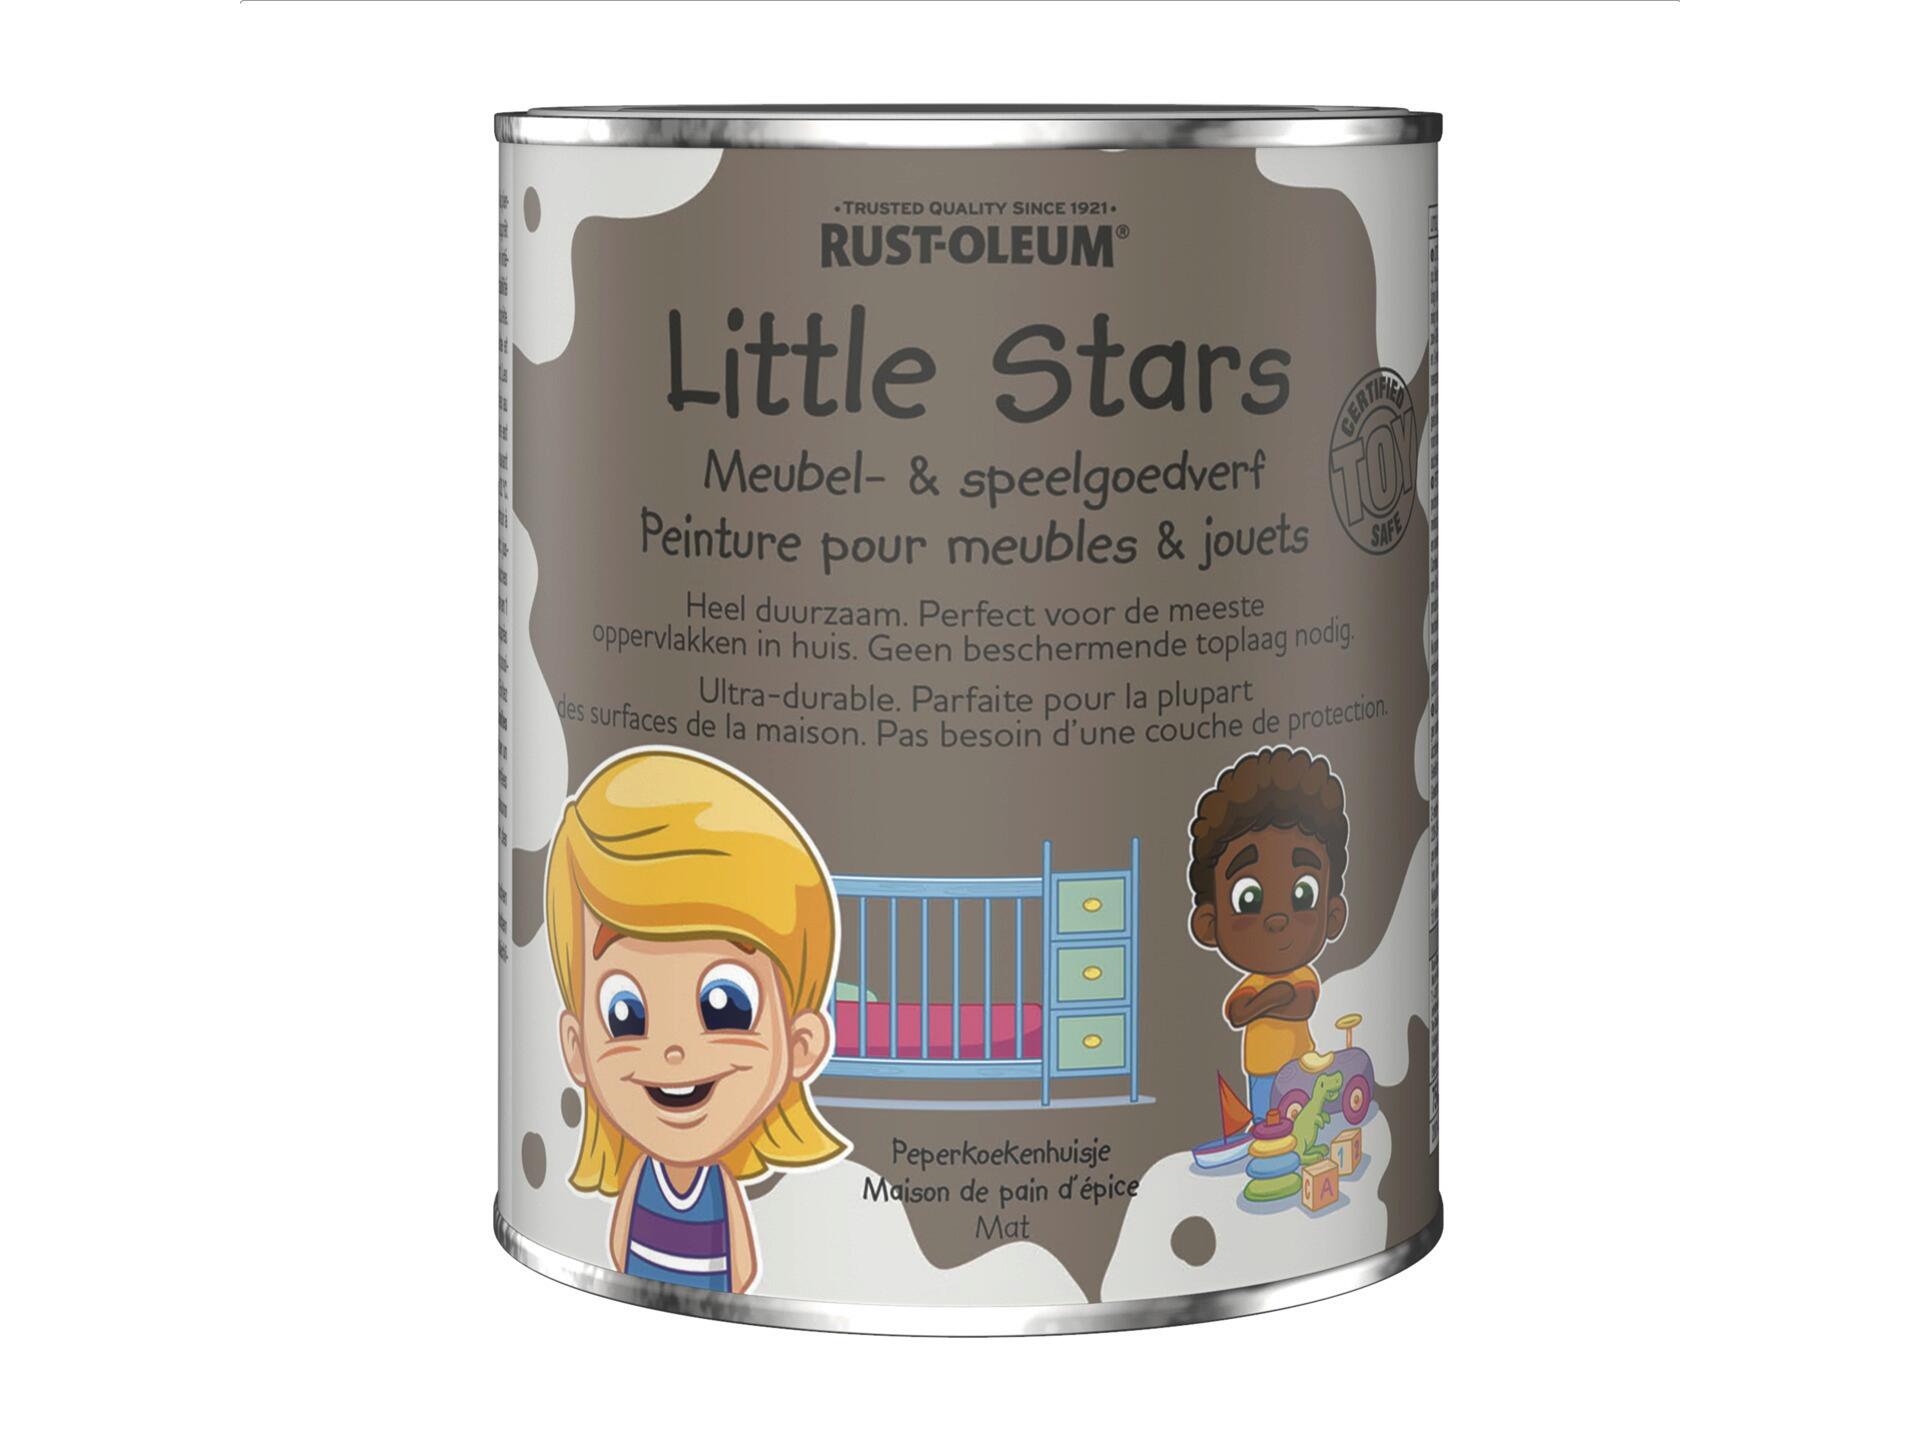 Rust-oleum Little Stars peinture pour meubles et jouets 750ml maison de pain d'épice